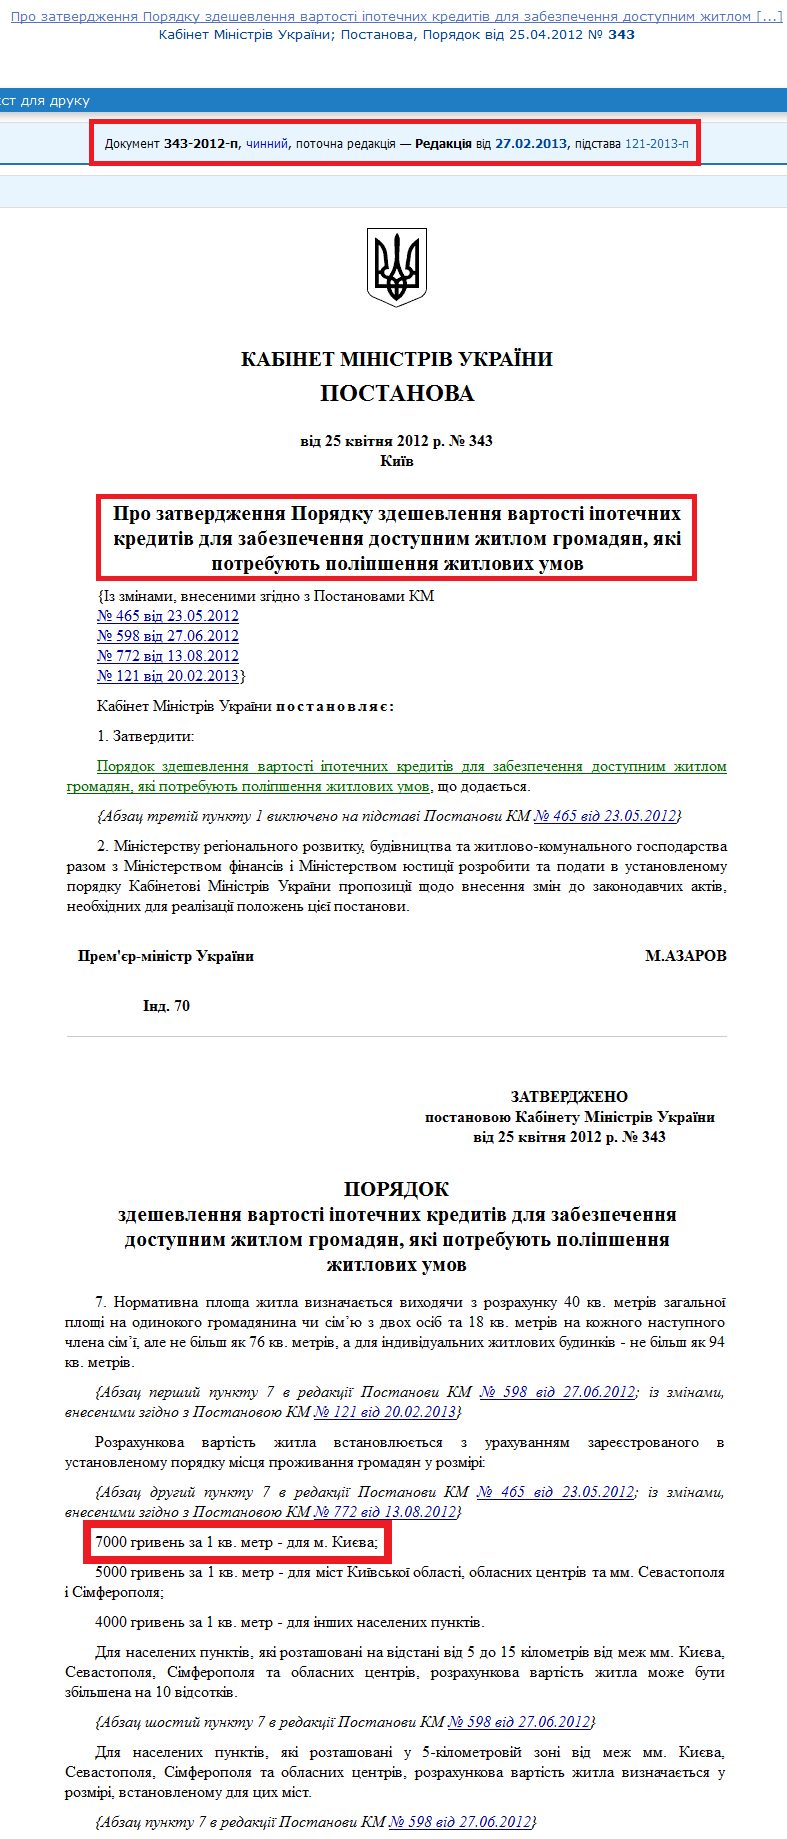 http://zakon2.rada.gov.ua/laws/show/343-2012-%D0%BF